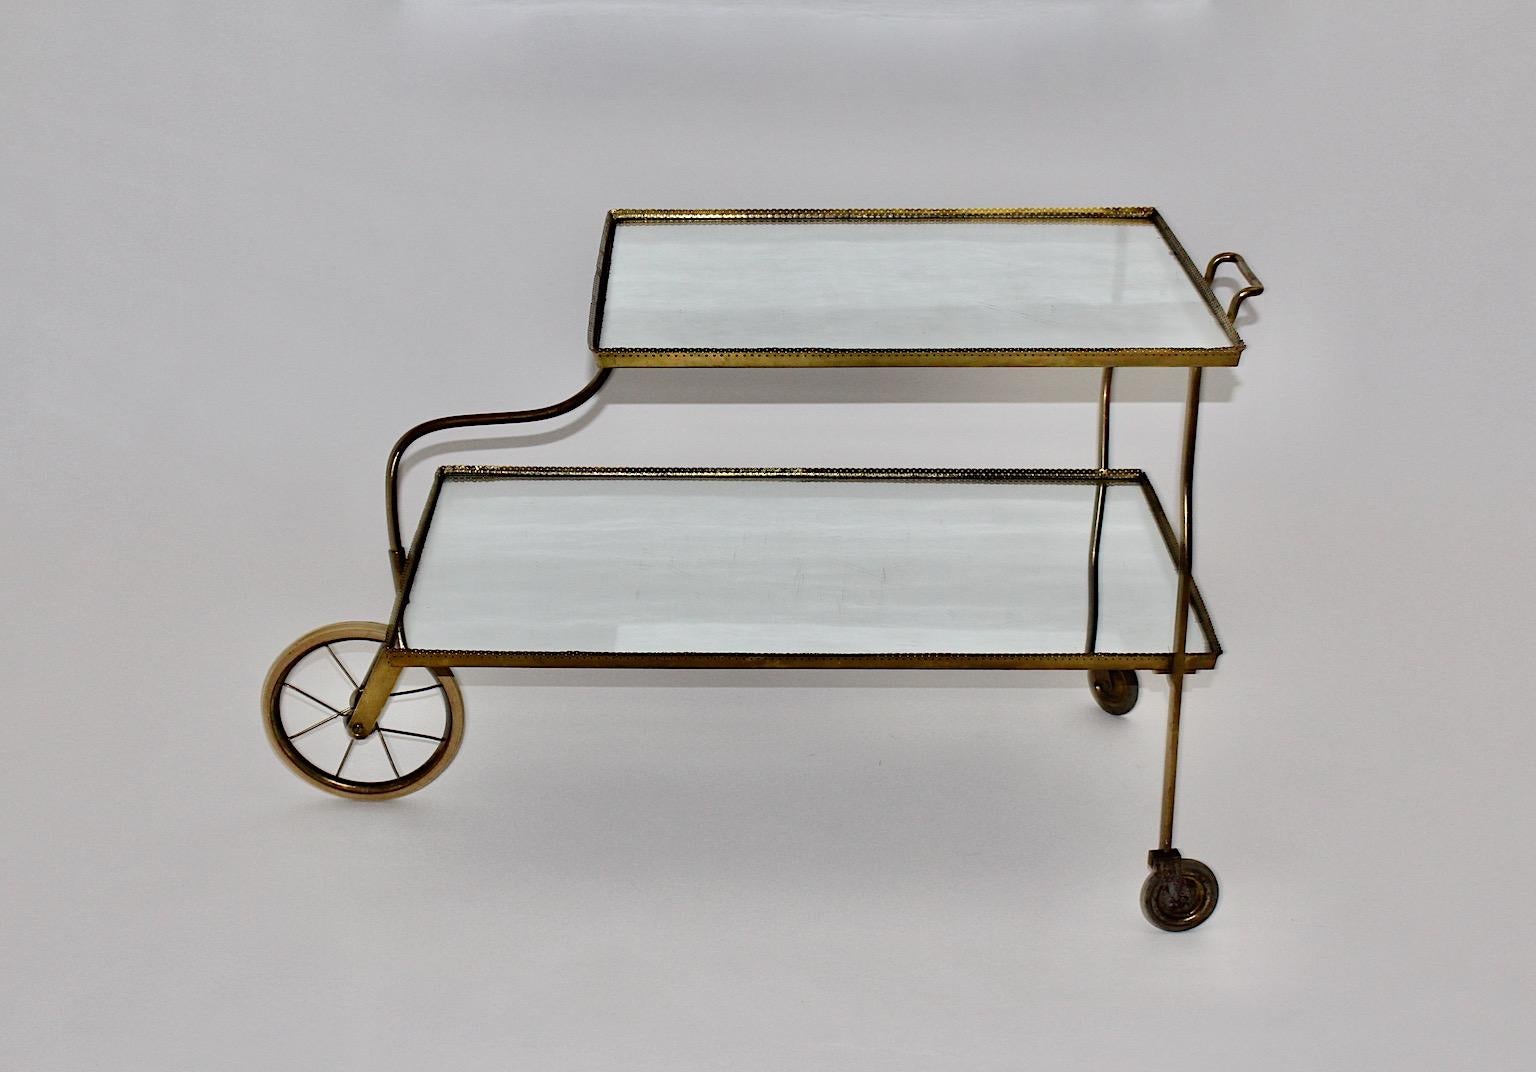 Chariot de bar vintage Art déco numéro 889 en laiton et verre miroir conçu par Josef Frank pour Svenskt Tenn vers 1938, Suède.
Un étonnant chariot de bar authentique en laiton, laiton perforé, verre miroir et trois ( 3 ) roues en caoutchouc avec